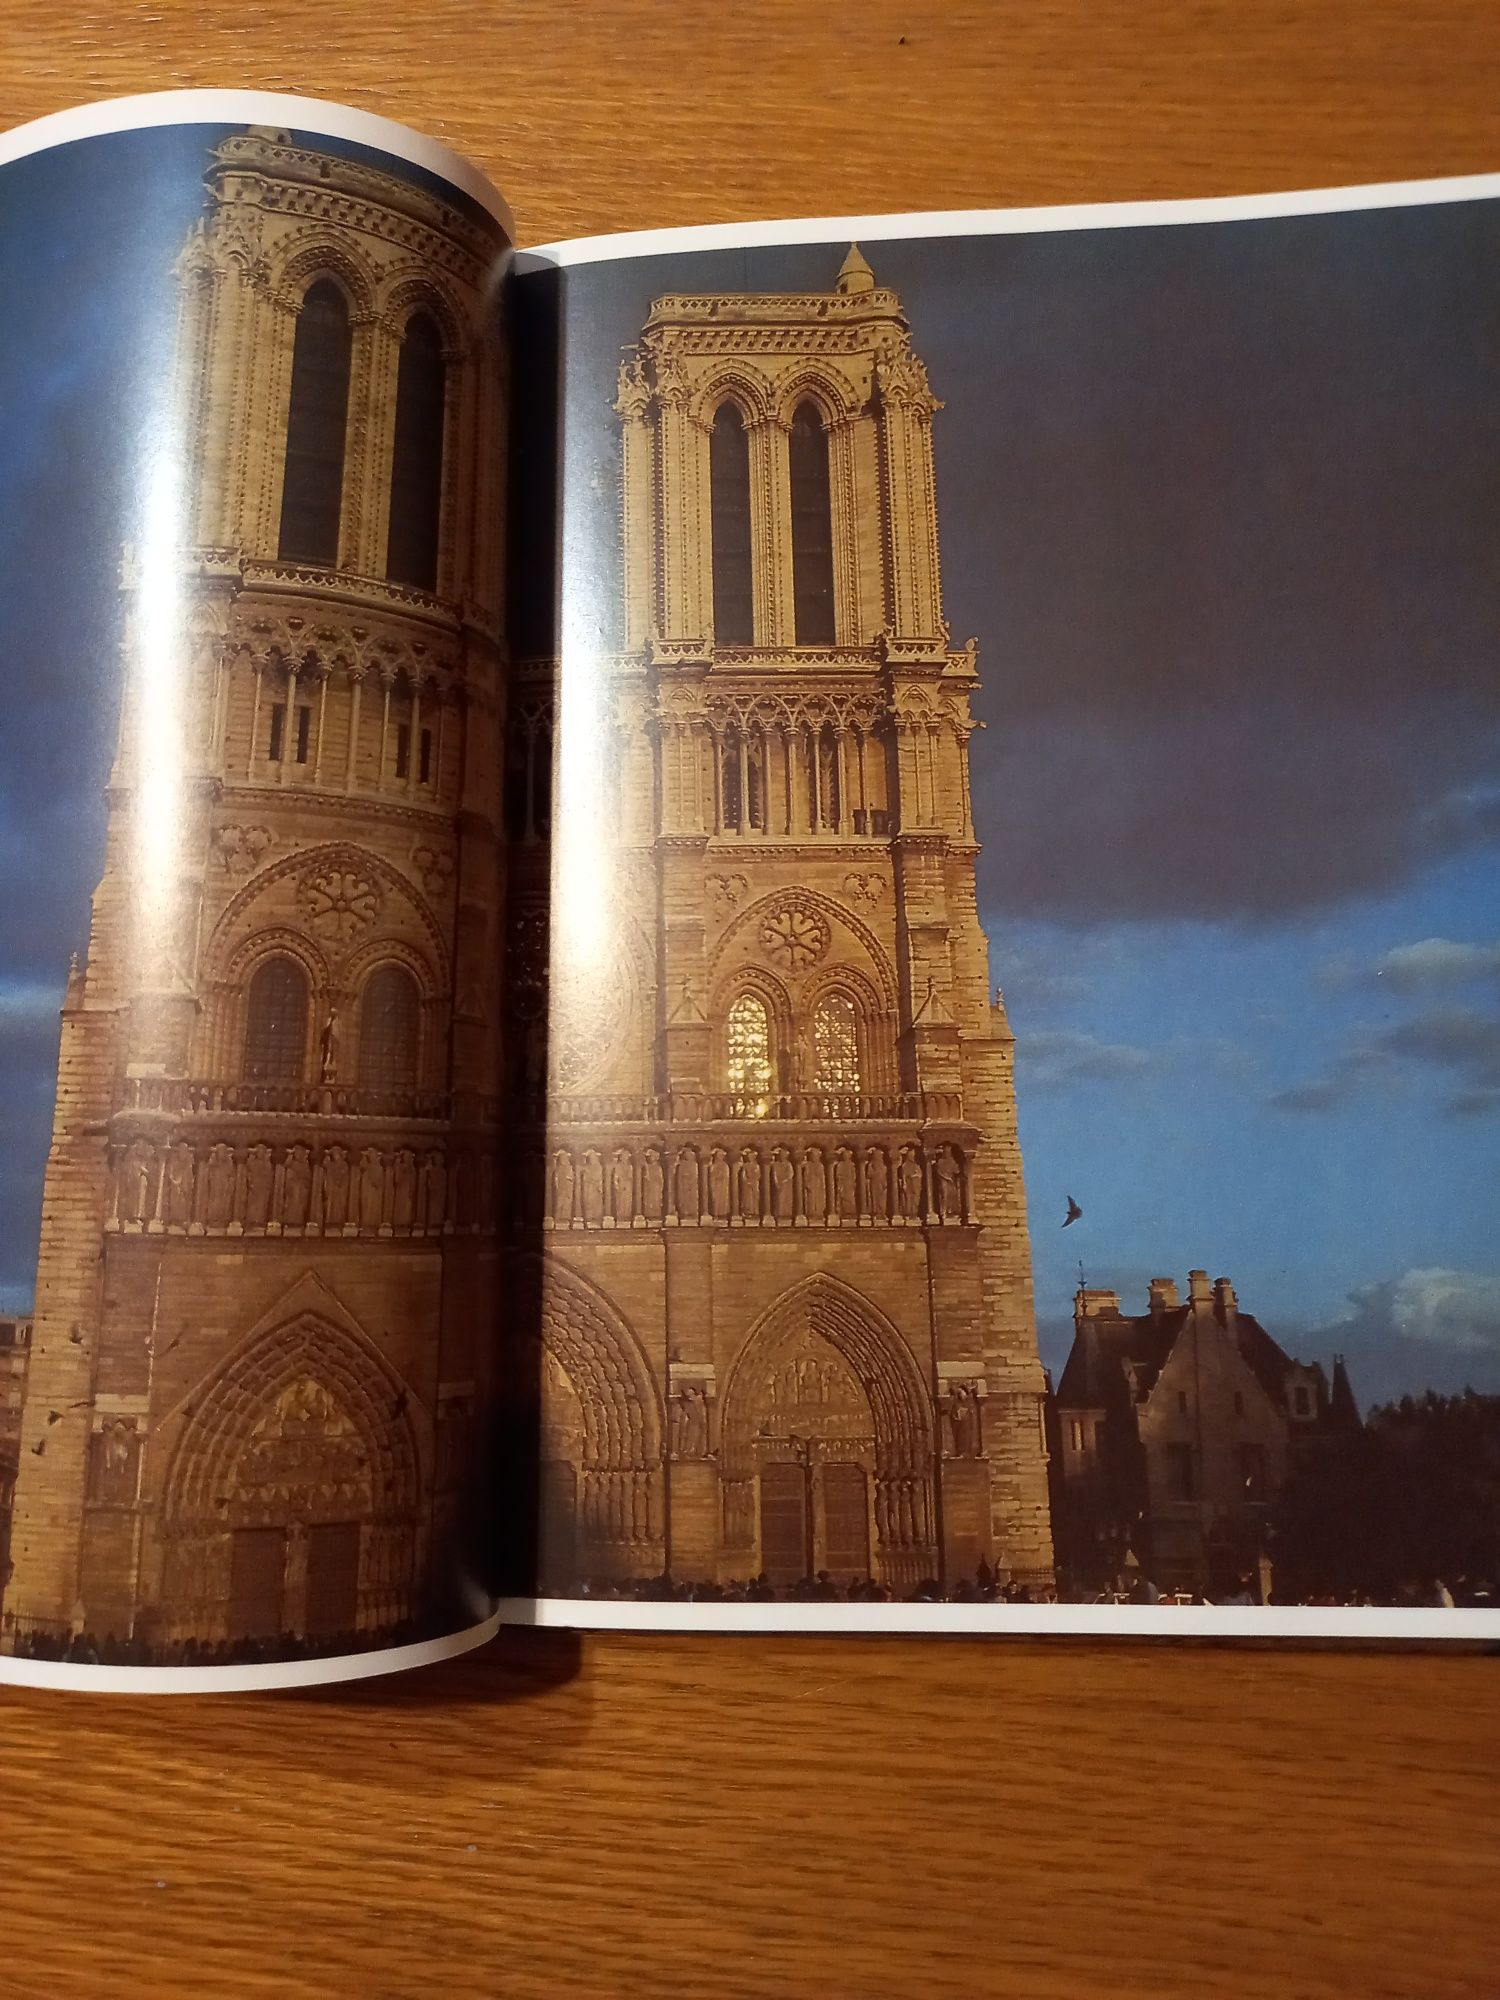 Книга о Париже на английском языке.